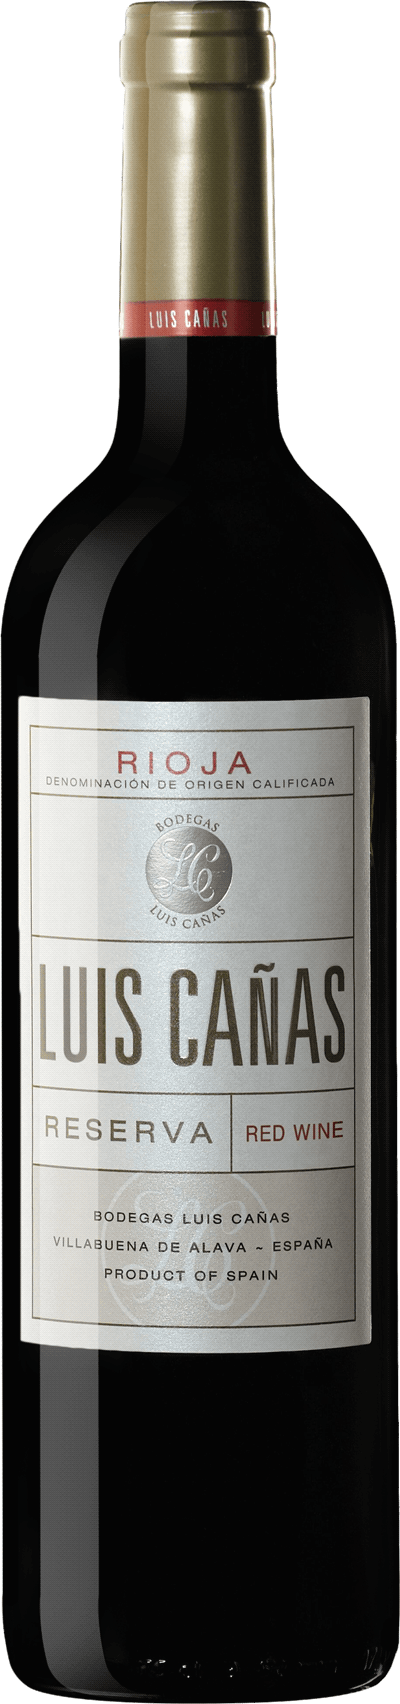 Luis Cañas Rioja Reserva, 2016